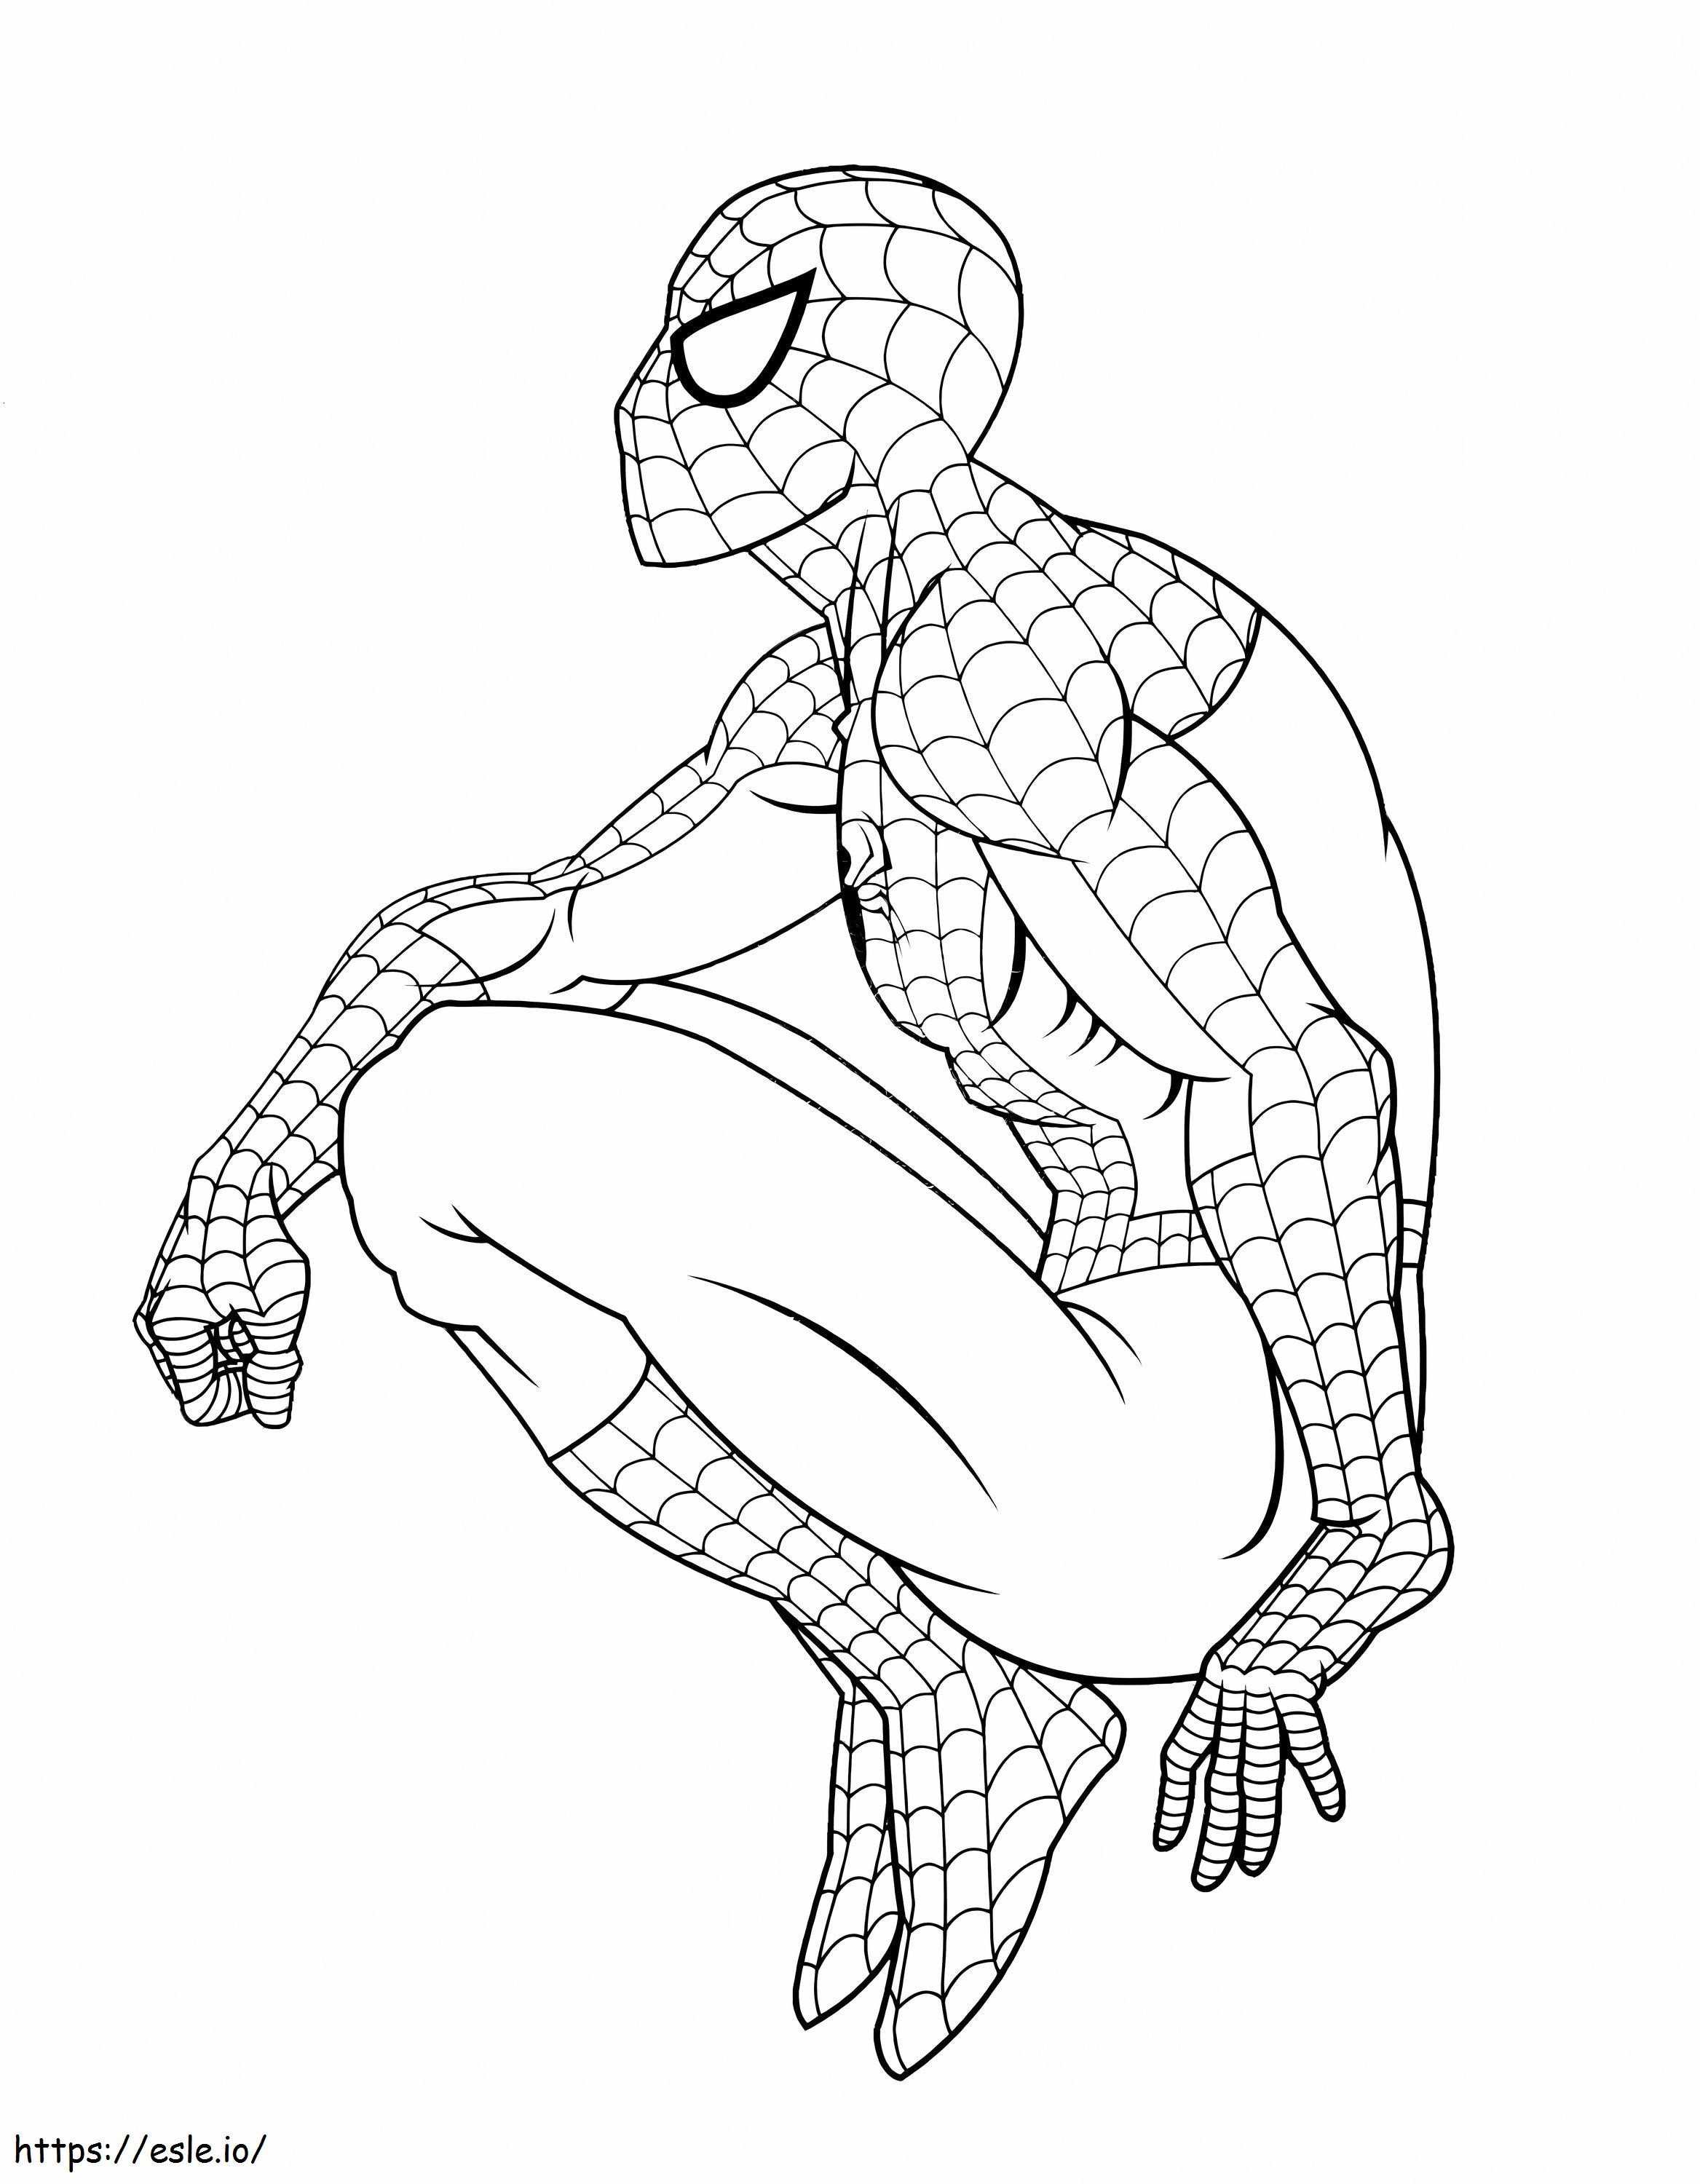 Siedzący Spider-Man kolorowanka